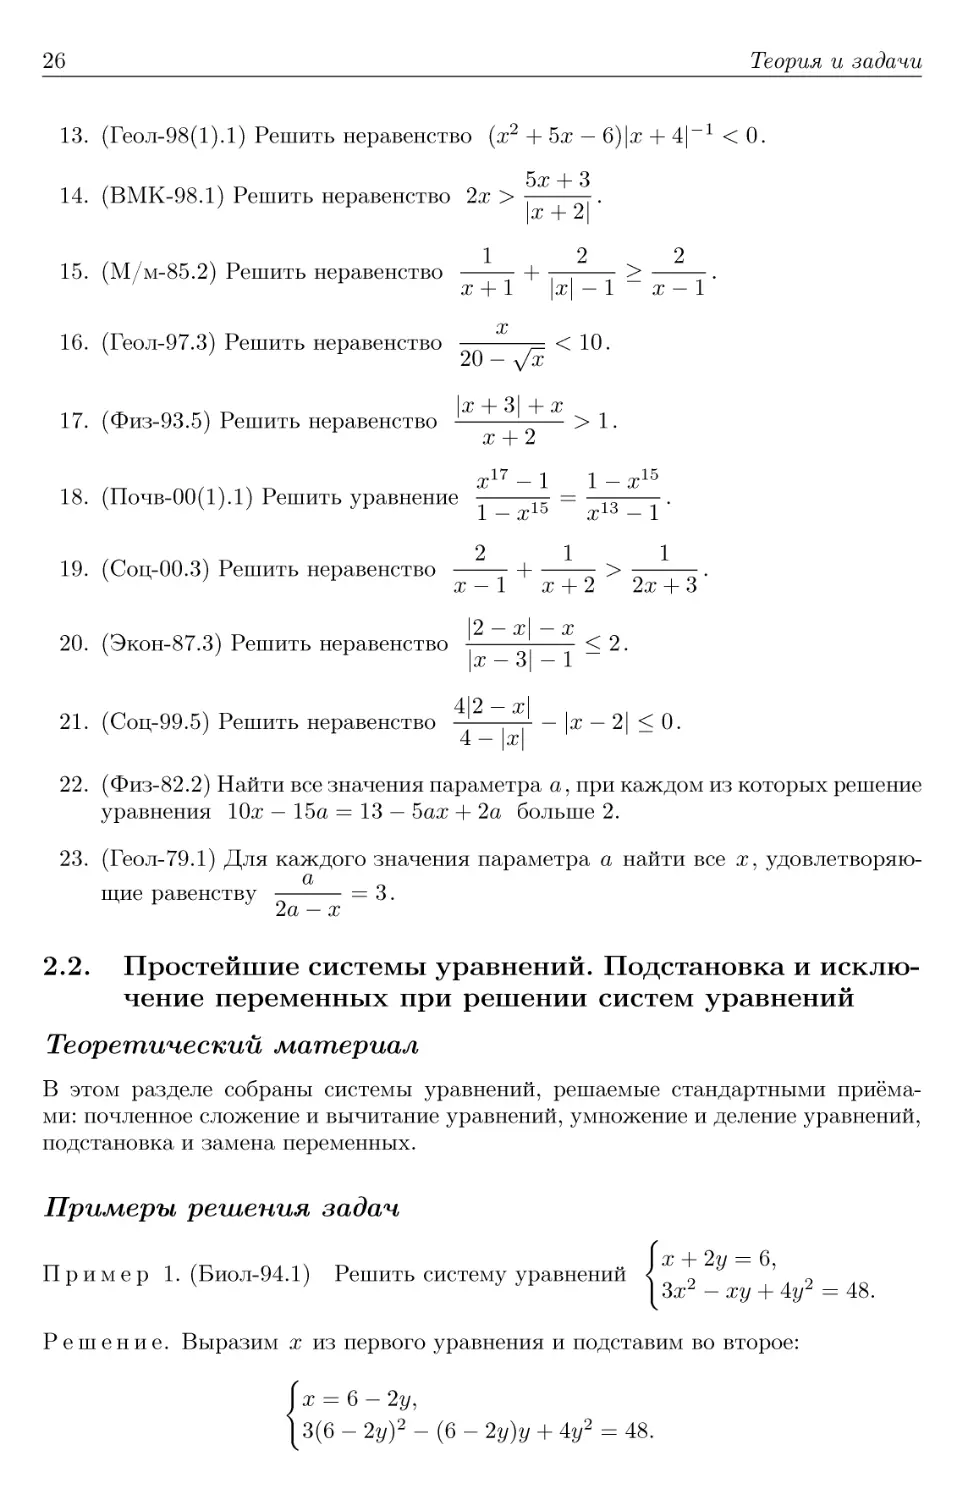 2.2. Простейшие системы уравнений. Подстановка и исключение переменных при решении систем уравнений